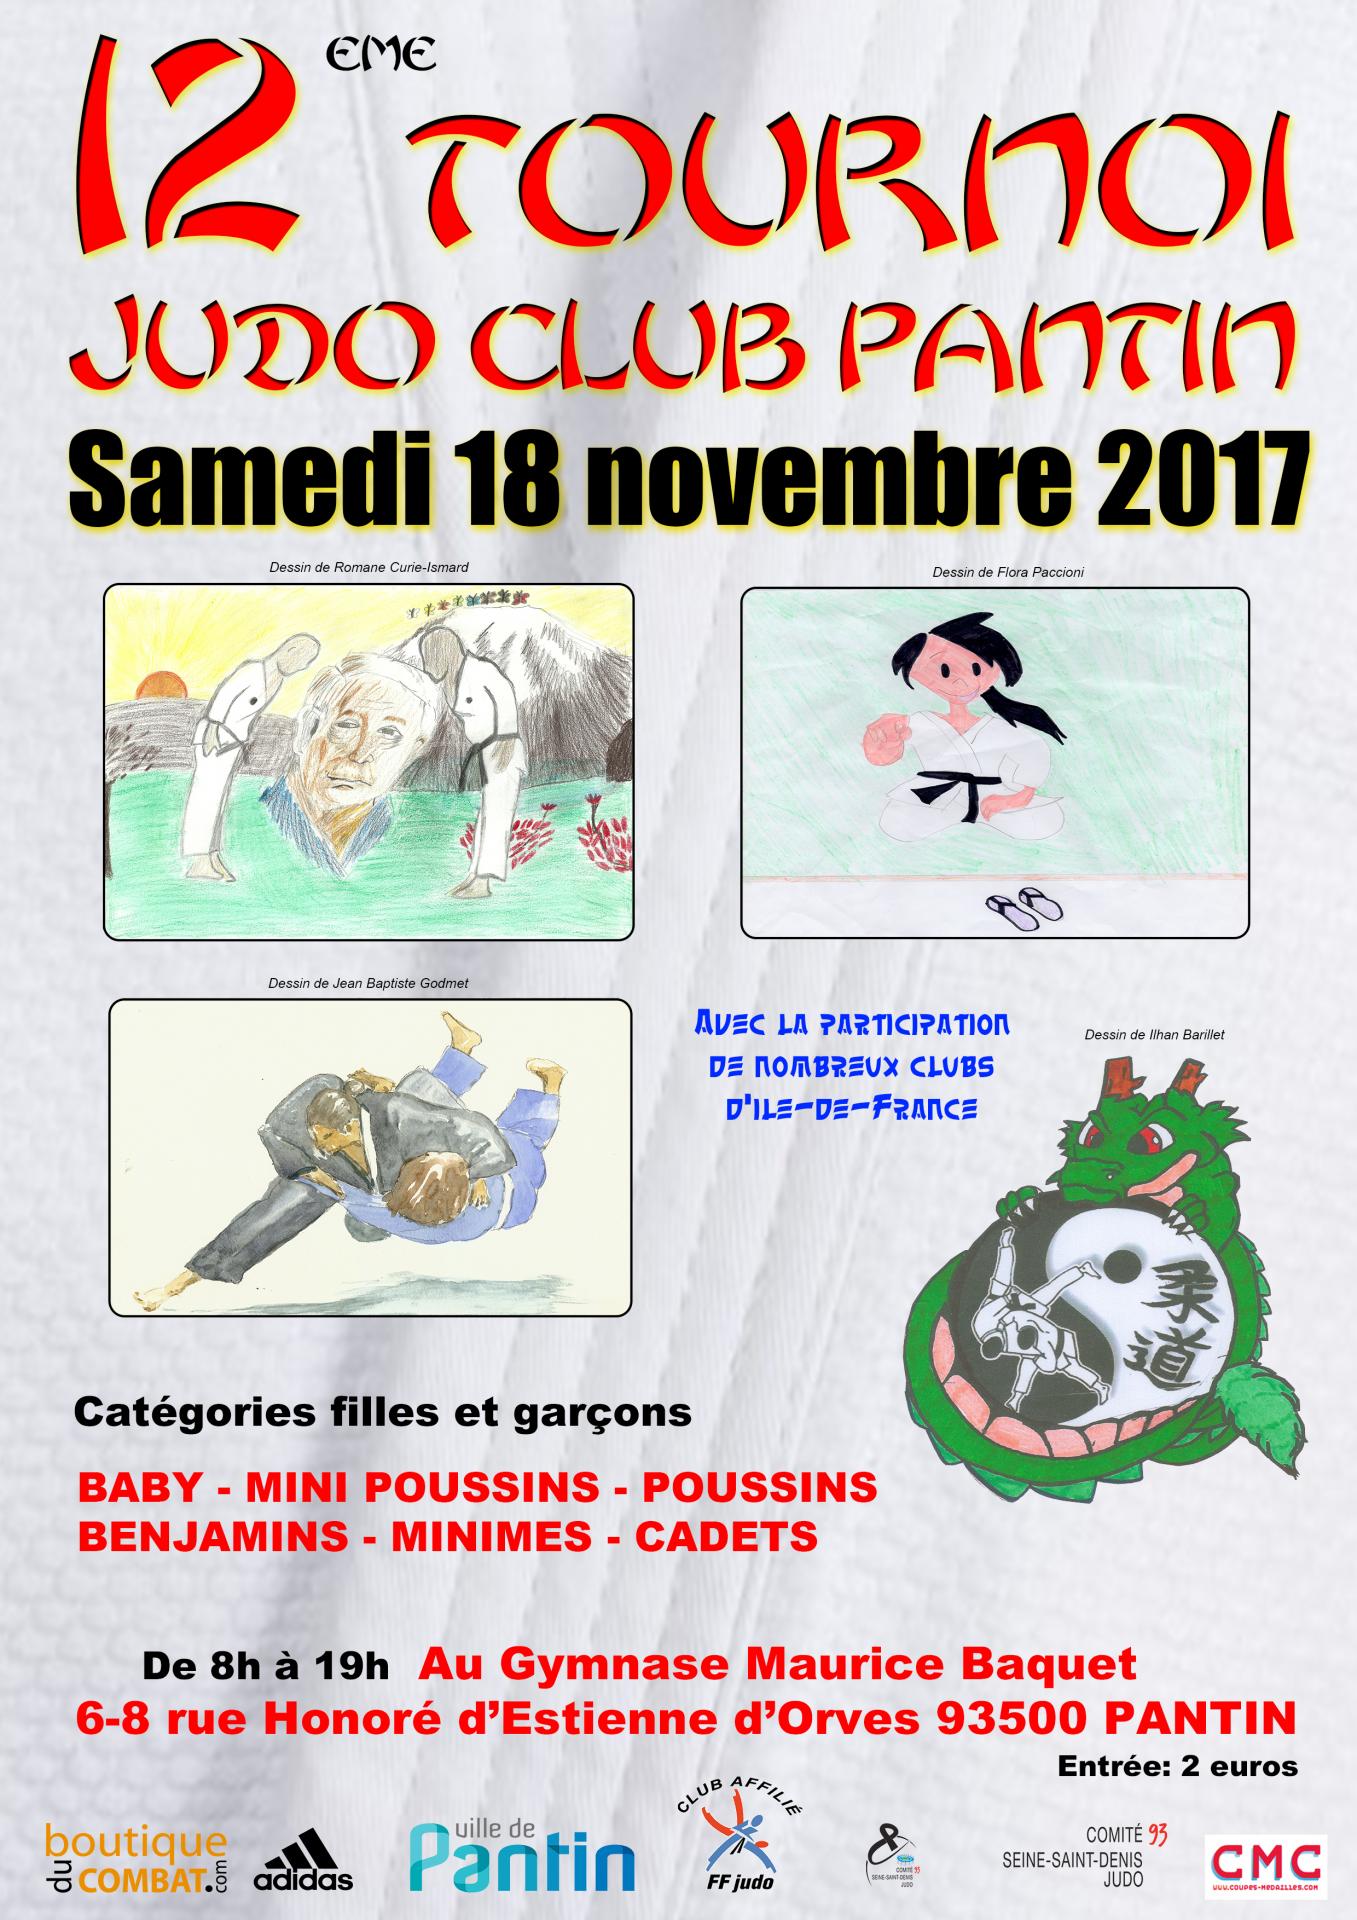 12 eme tournoi a4 2017 judo club pantin